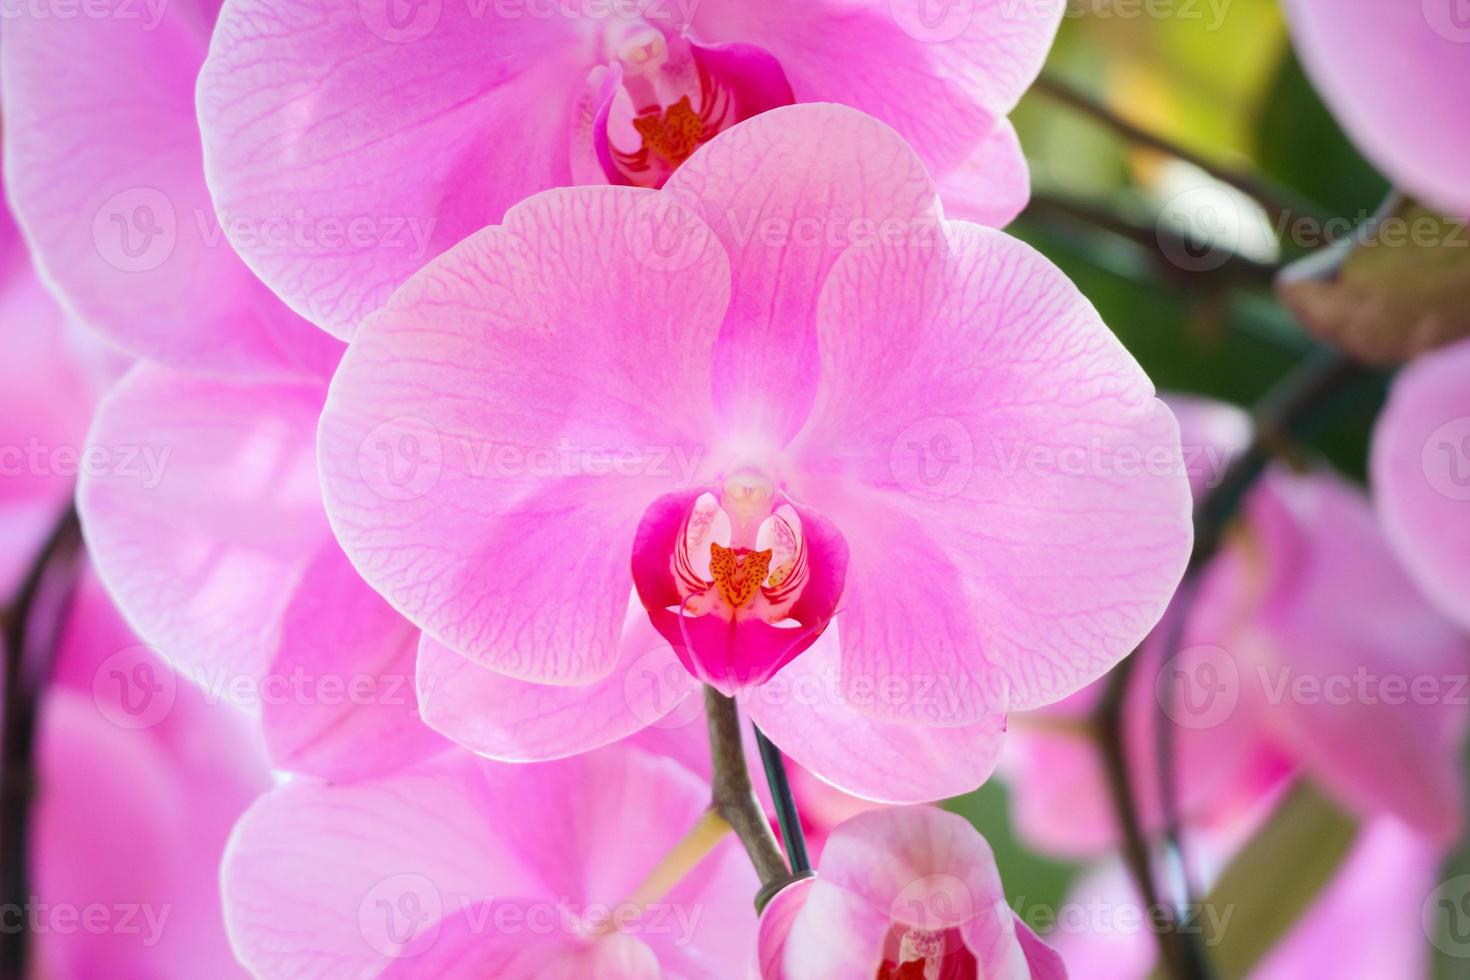 mooi phalaenopsis orchidee bloem bloeiend in tuin bloemen achtergrond foto